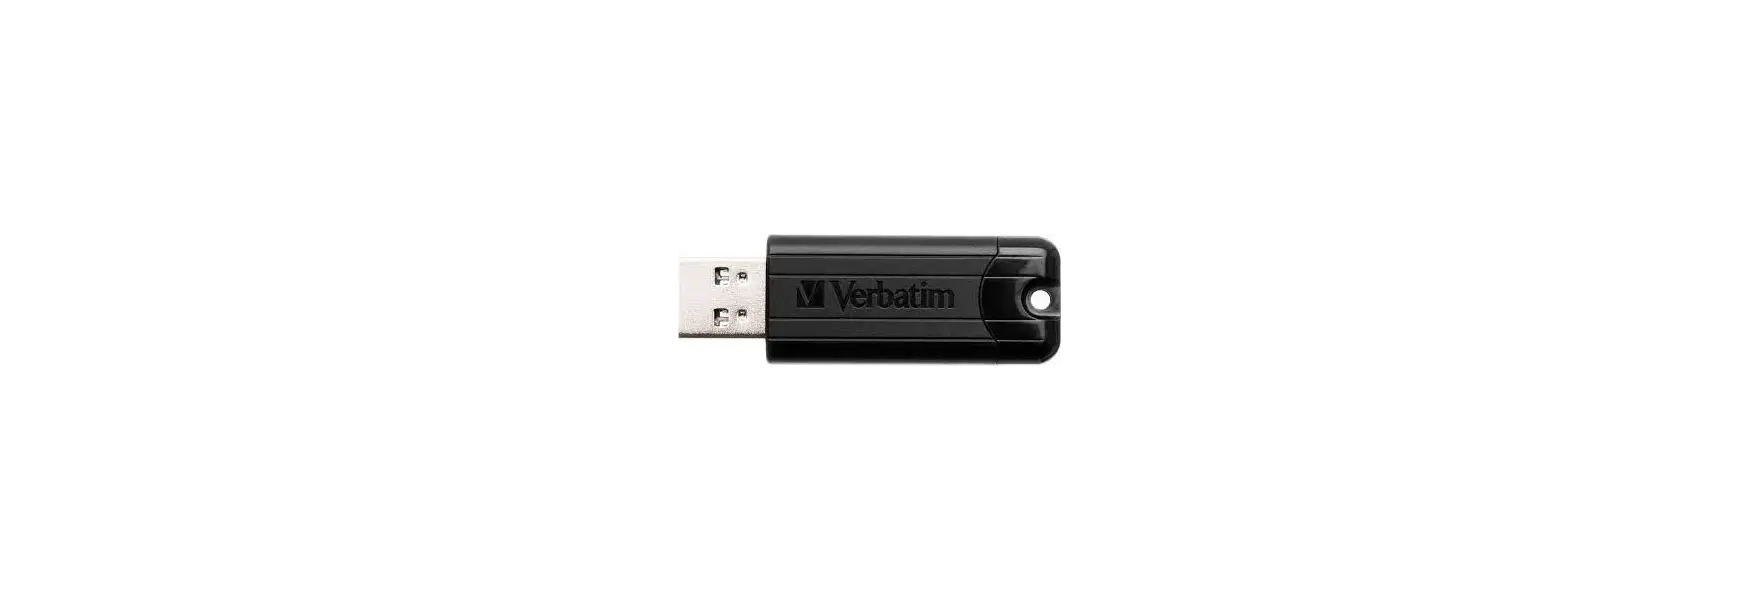 USB Verbatim 256GB USB 3.0 / Black 